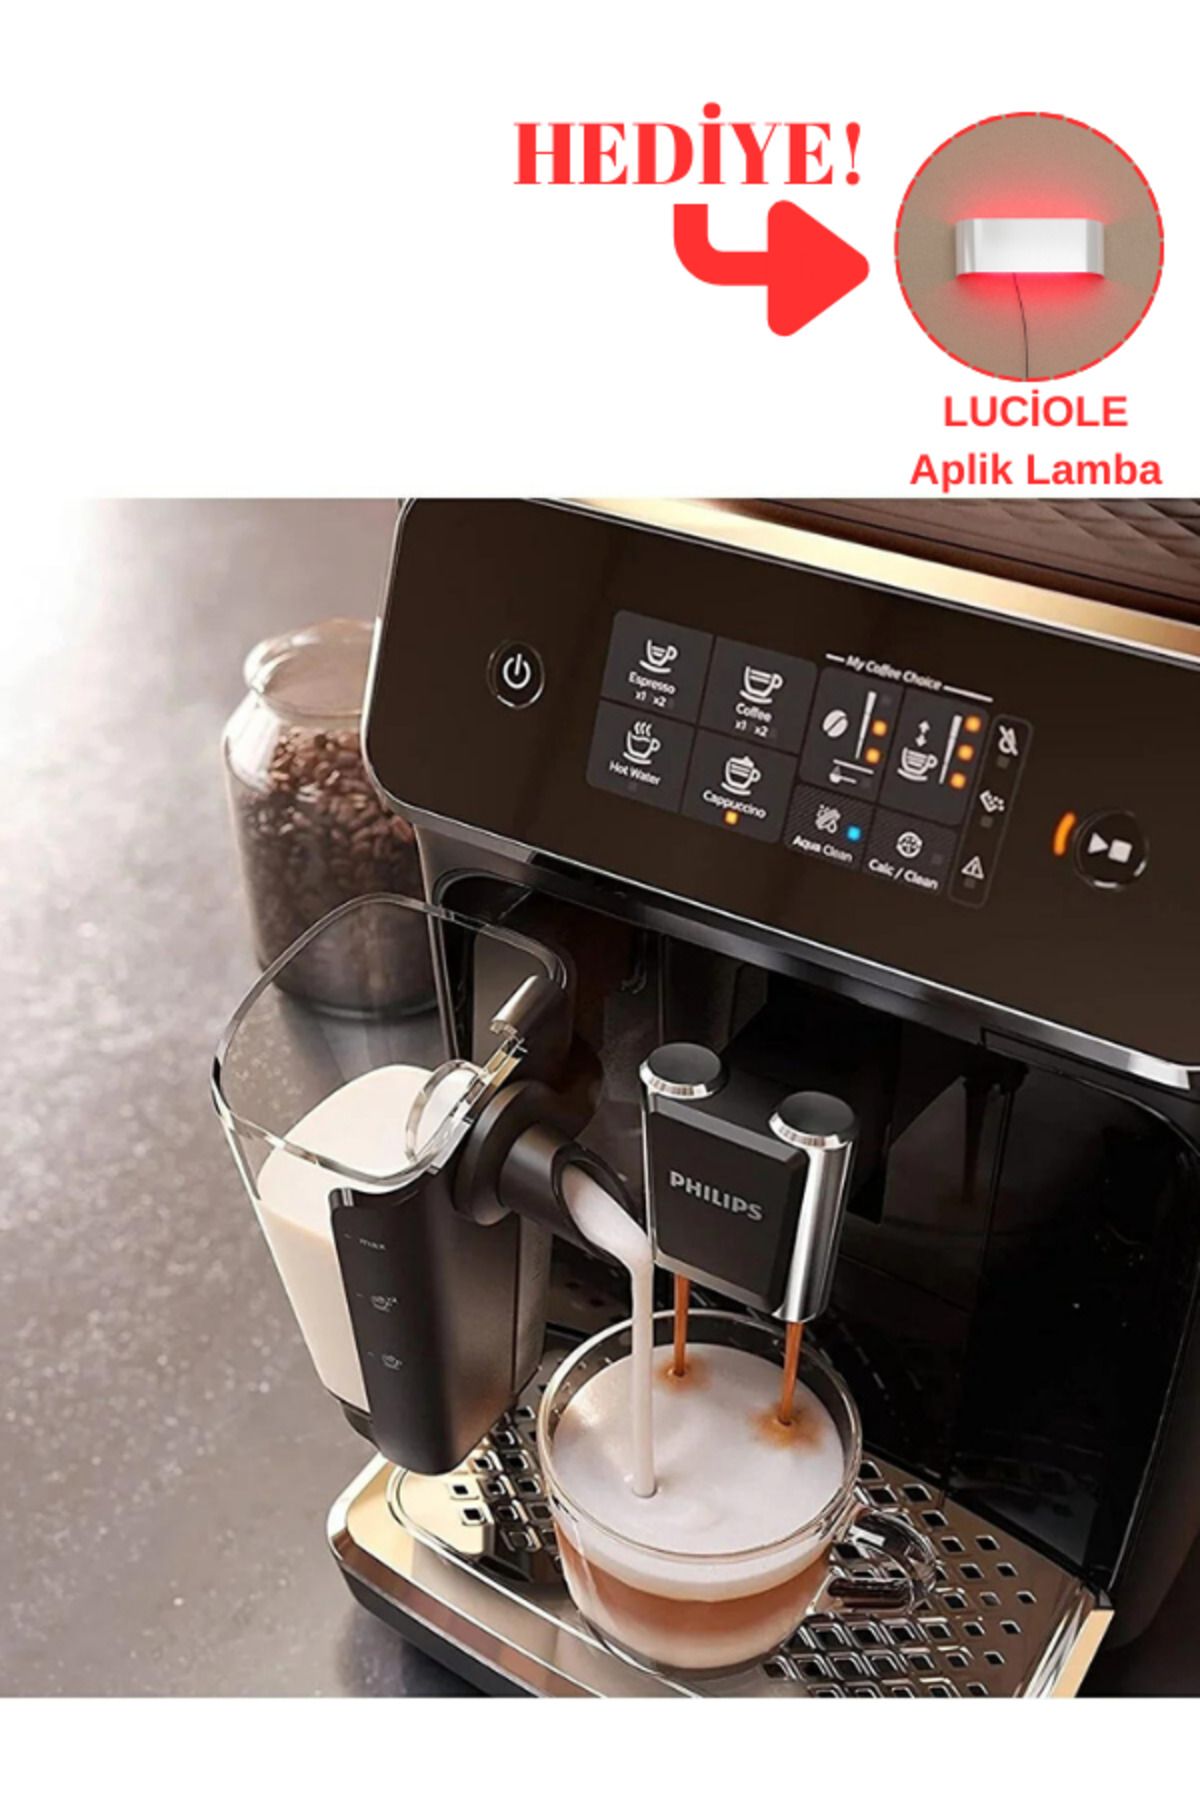 Philips Ep2220/10 Full Otomatik Espresso Makinesi Premium %100 Seramik Öğütücü - Luciole Lambader Hediye!